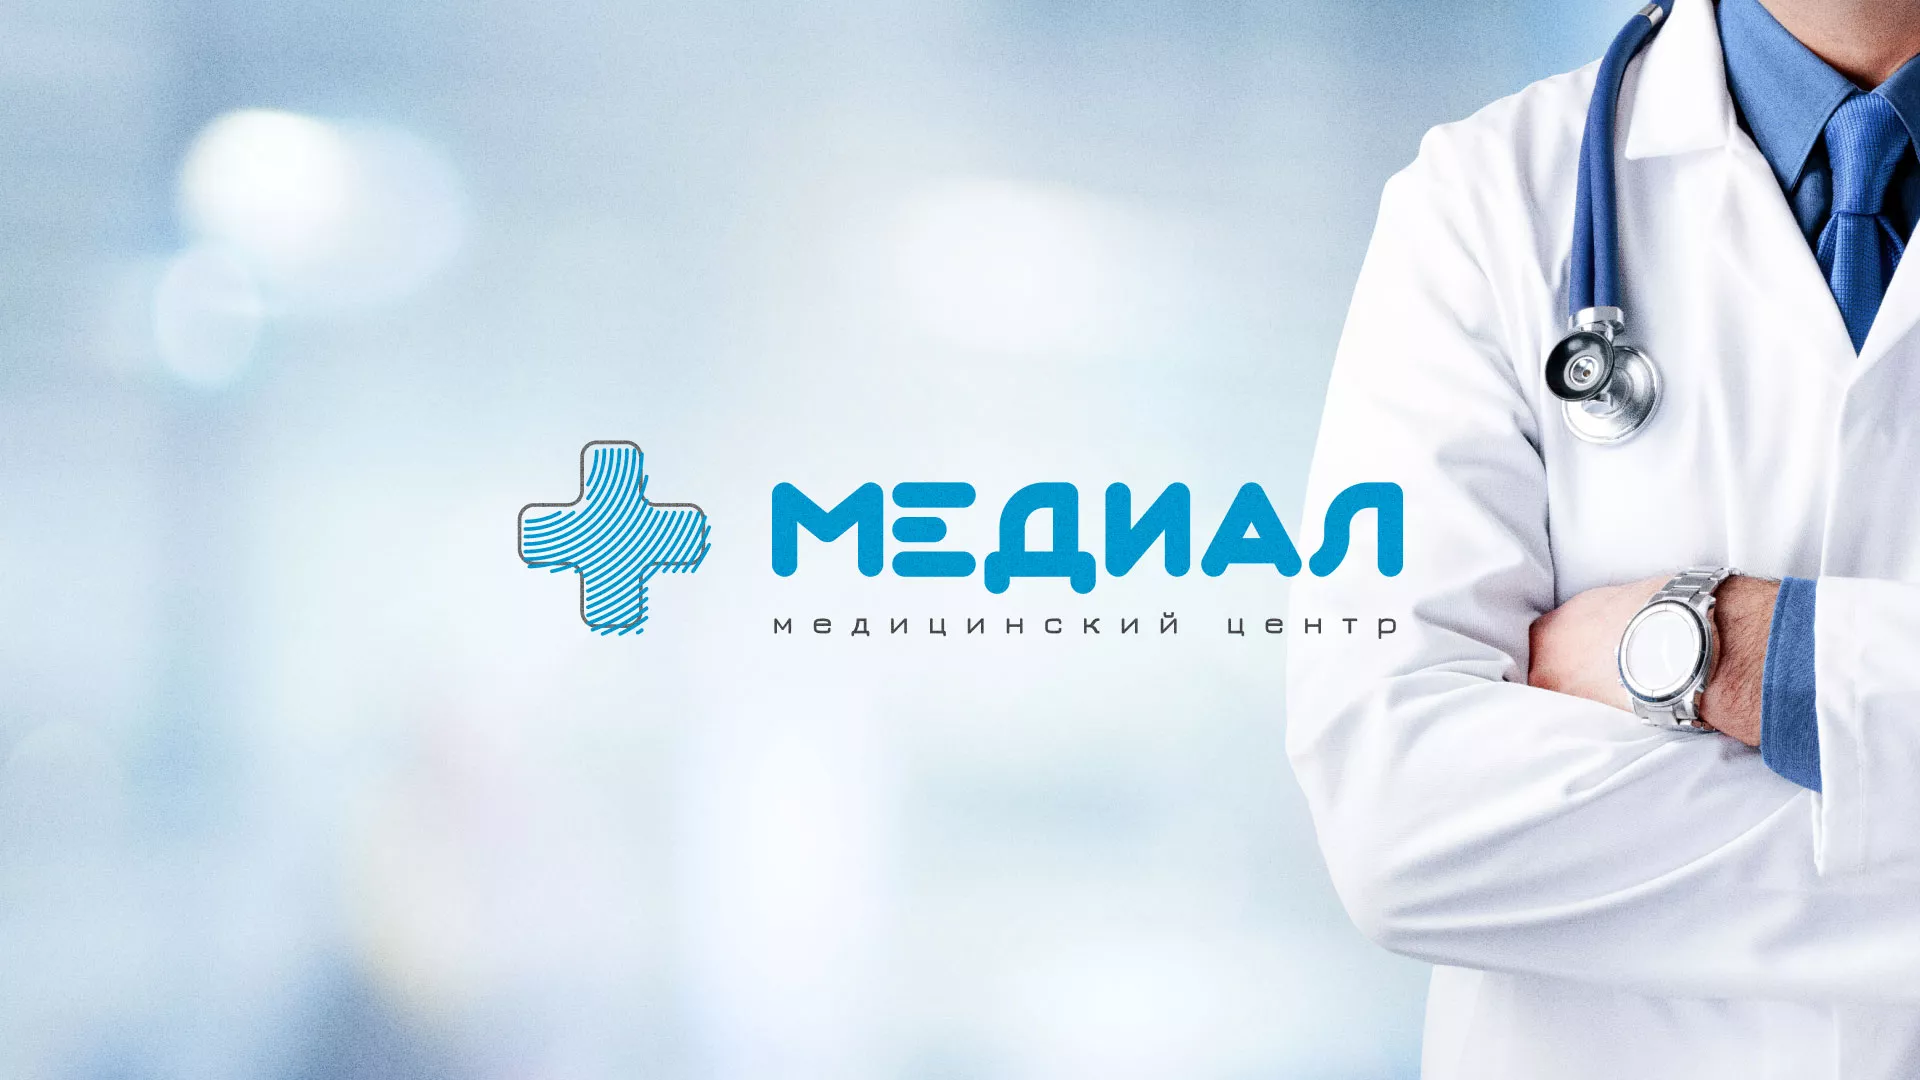 Создание сайта для медицинского центра «Медиал» в Харабалях